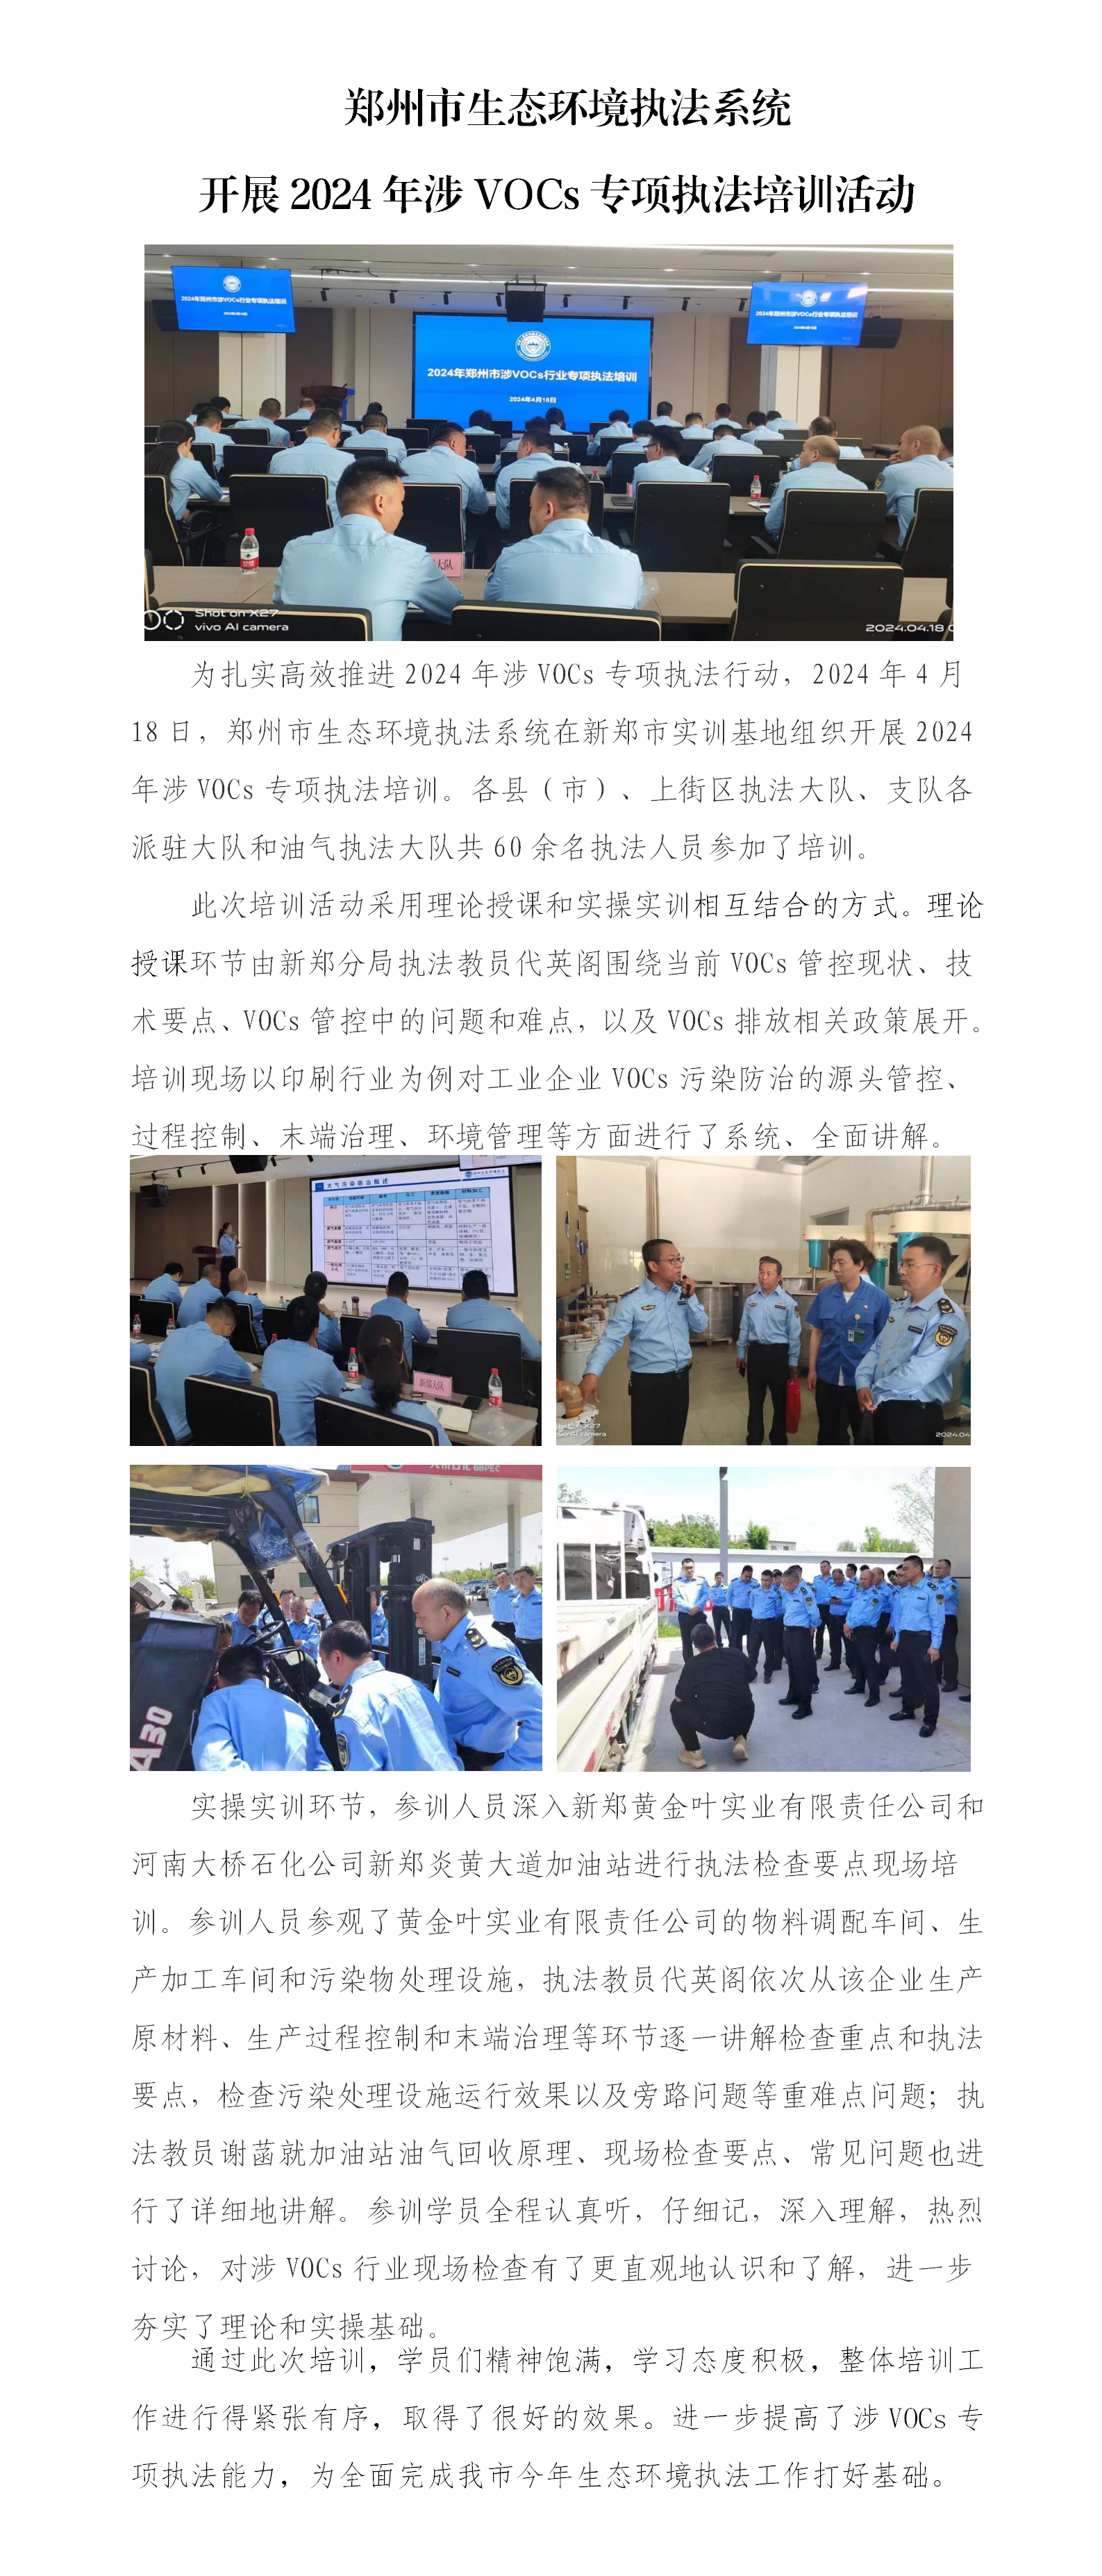 第9期 郑州市生态环境执法系统开展2024年涉VOCs专项执法培训活动_01.png